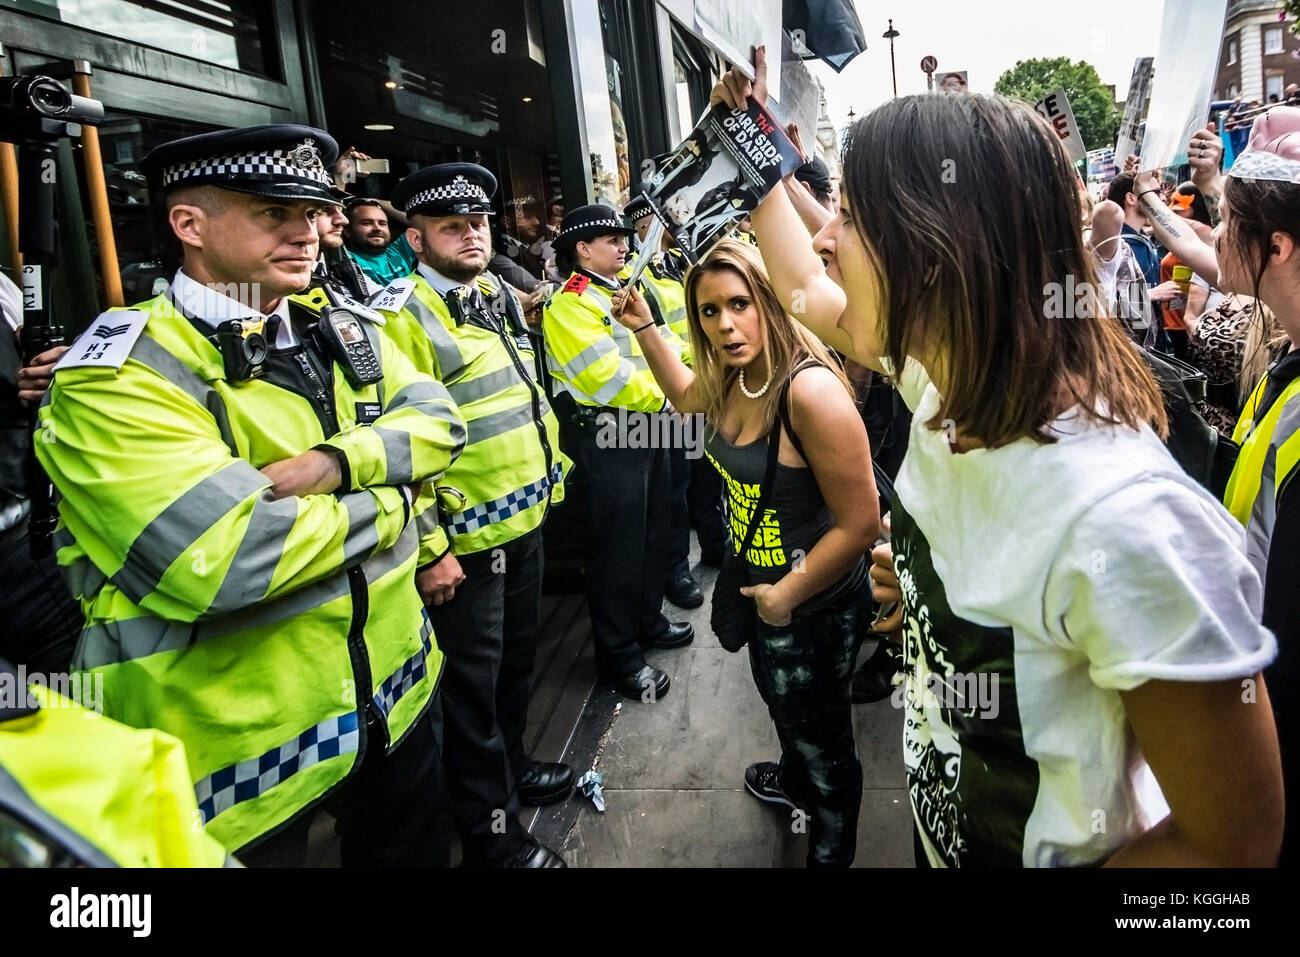 Vegan Aktivisten belagert eine McDonalds Restaurant in Whitehall London während ein Tier rechte Protest Demonstration Kundgebung März. Polizei Cordon an Stelle Stockfoto